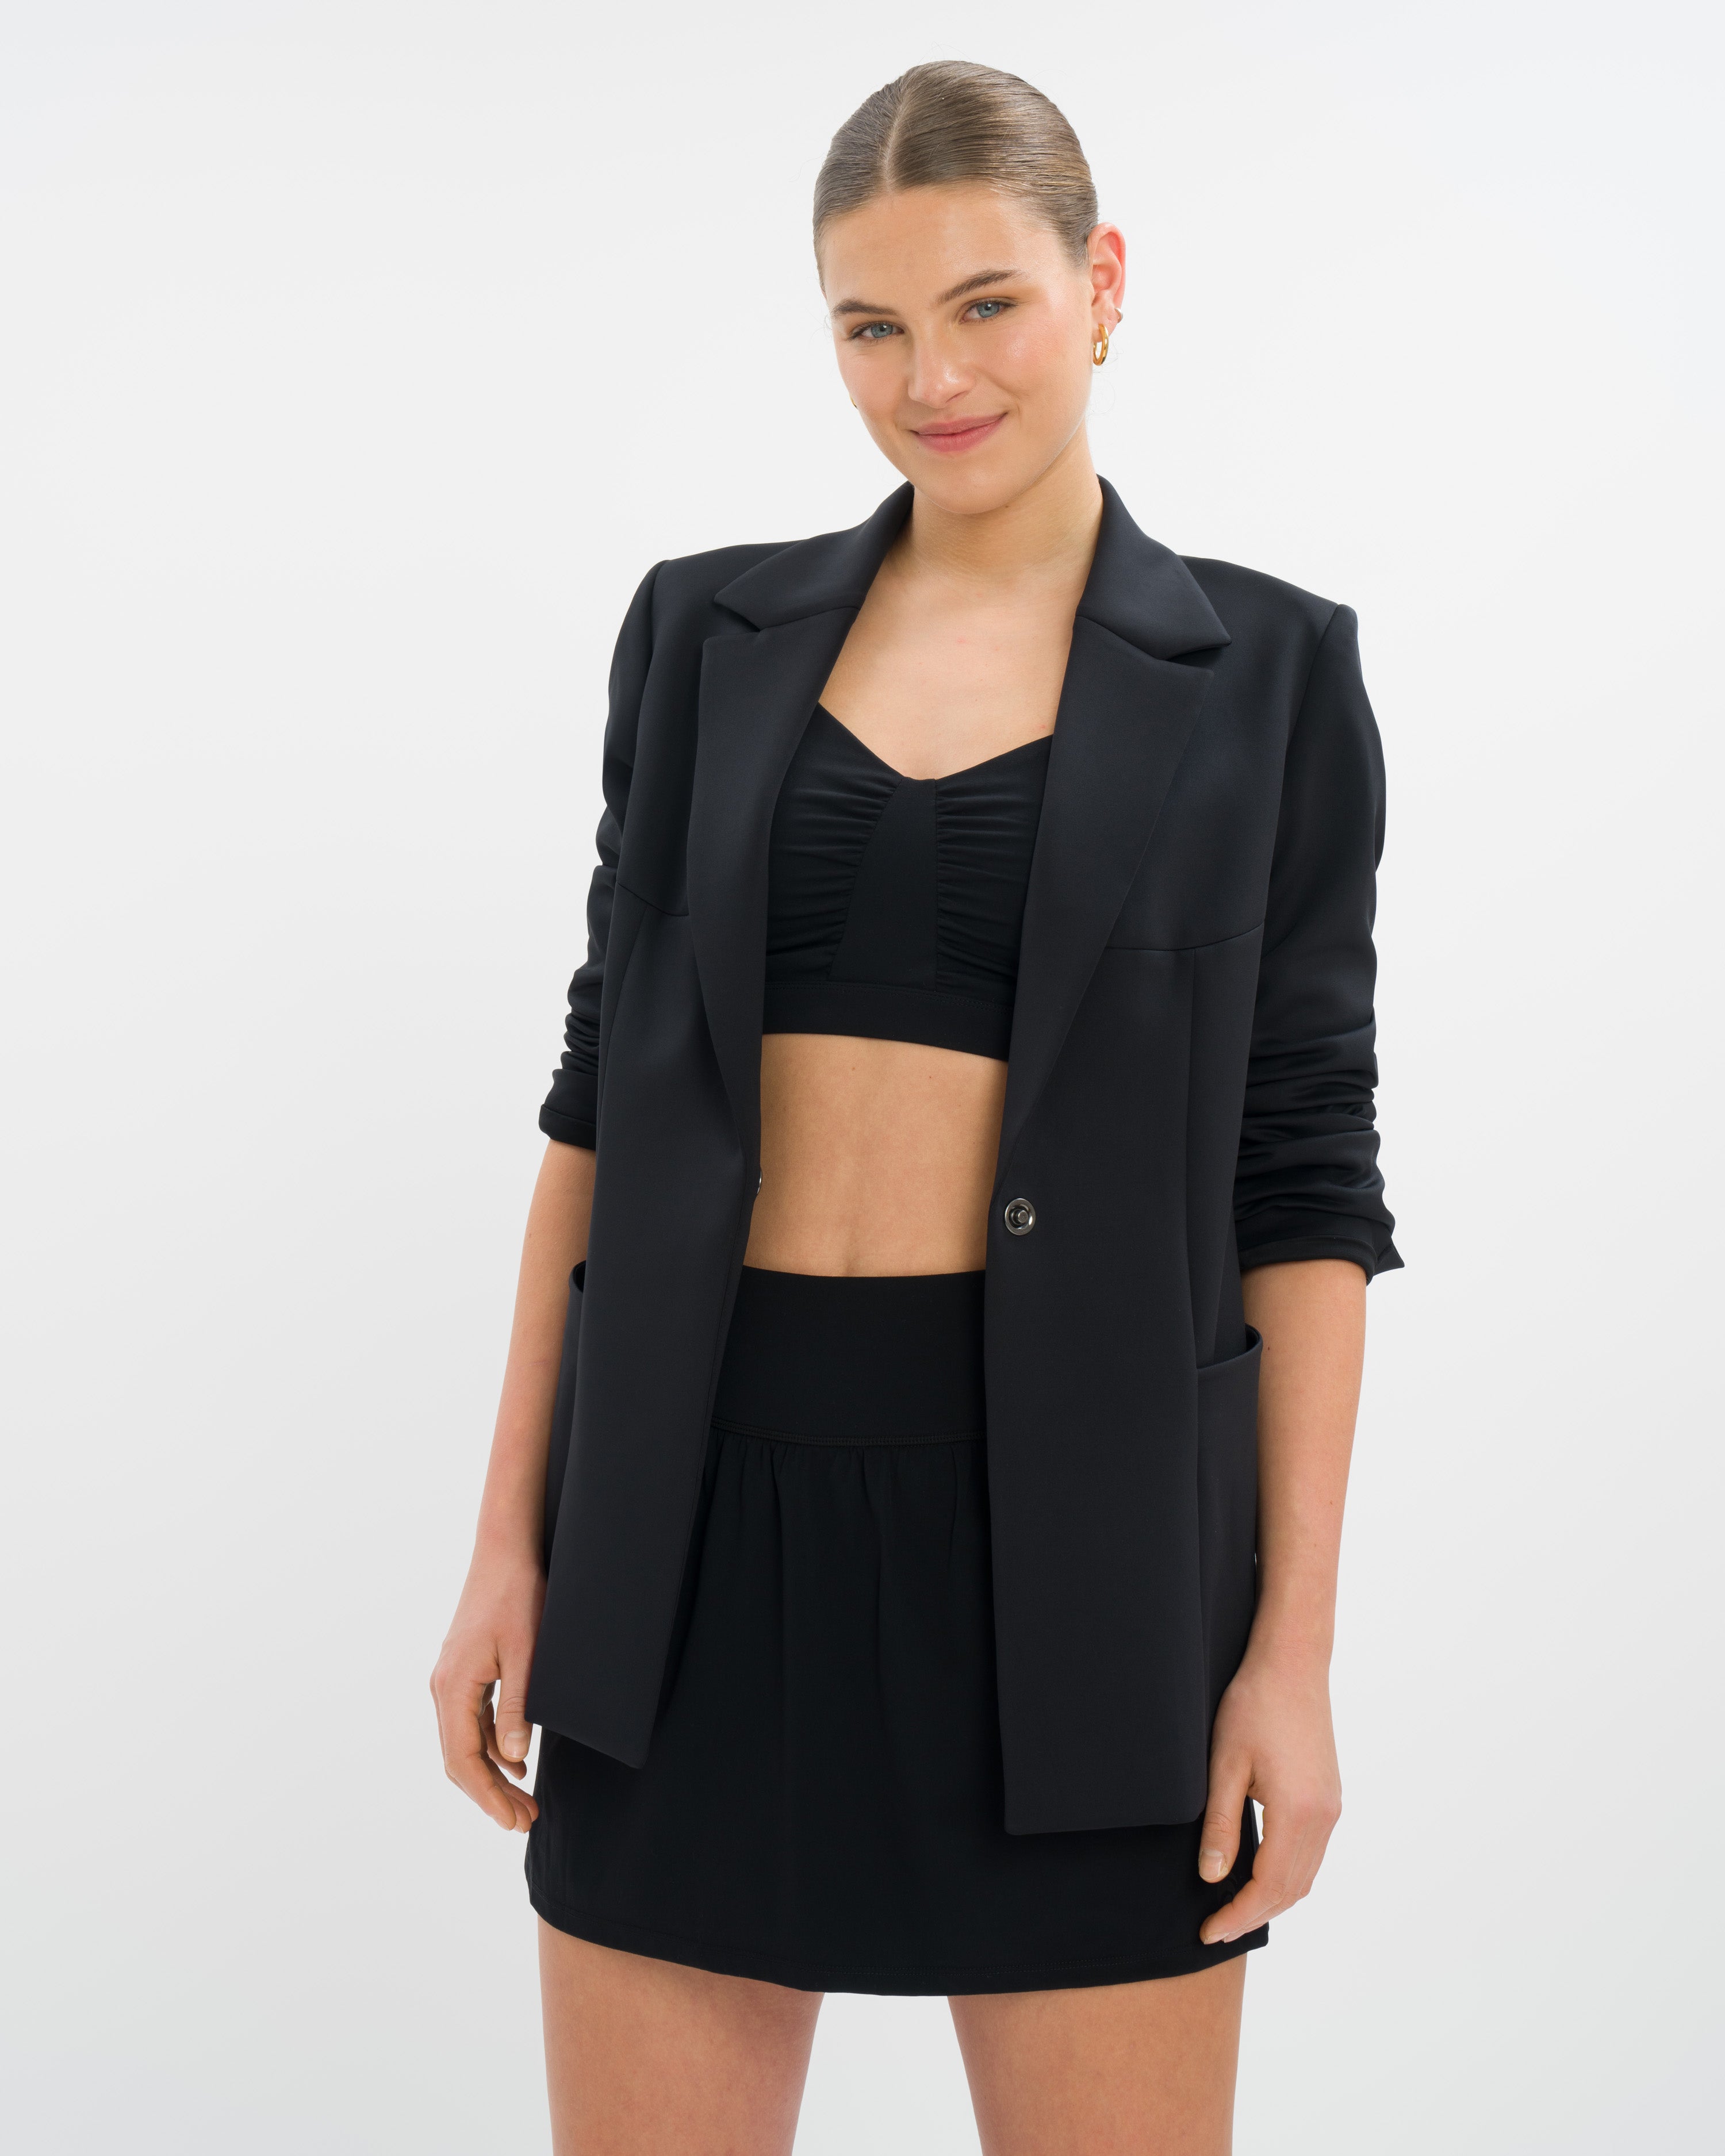 Marina Skirt Blazer Set Deluxe - Black